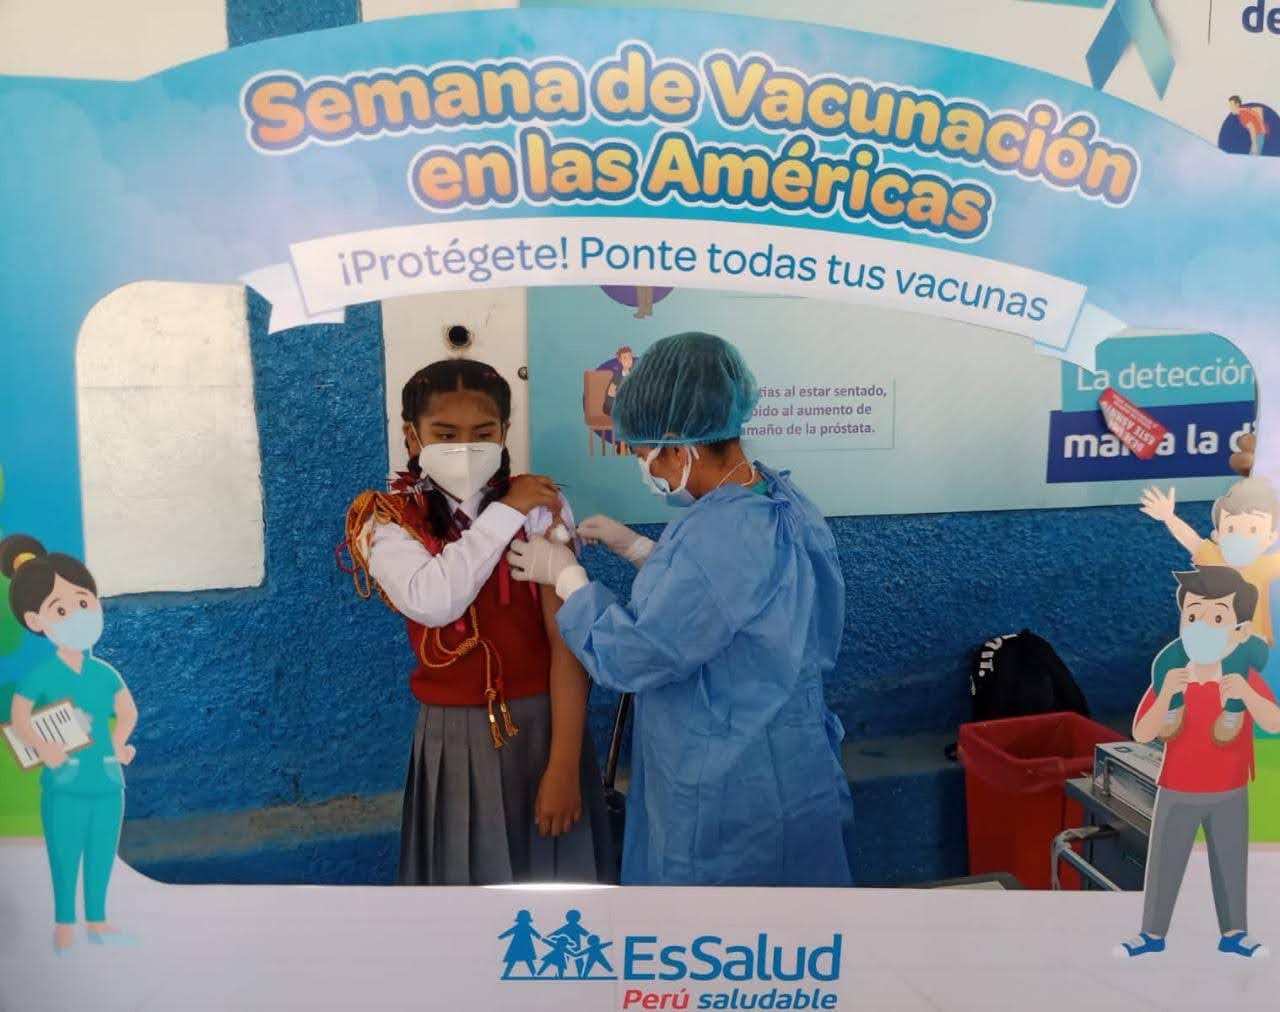 Essalud - EsSalud Apurímac participa activamente en Semana de Vacunación de Las Américas